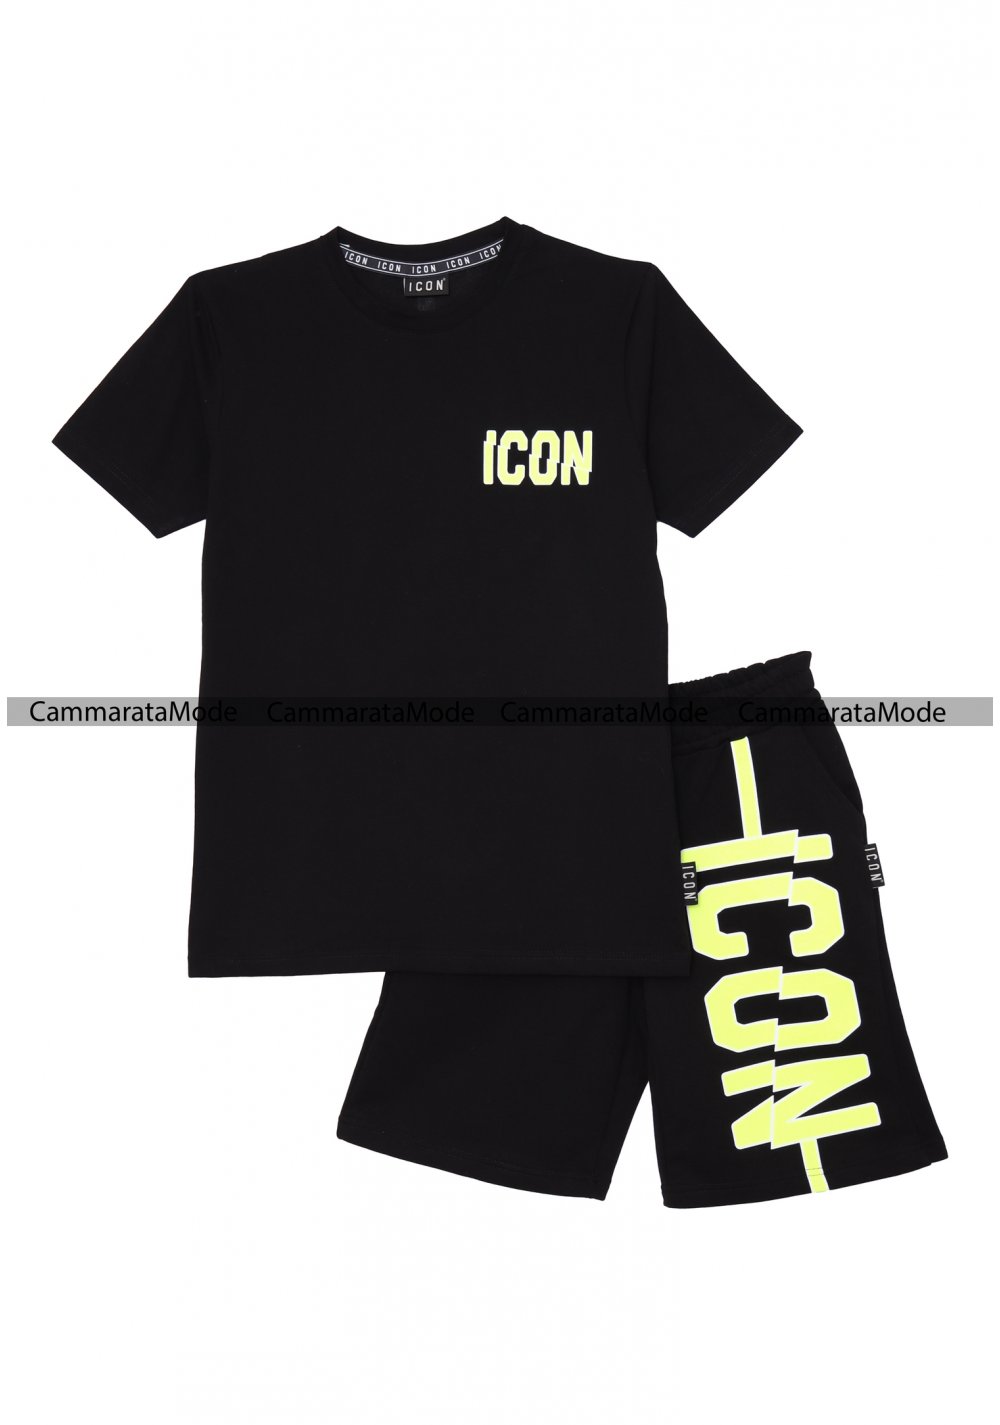 Completo ICON fluo per bambini - Set nero t-shirt e bermuda con logo fluo <br />  <br />